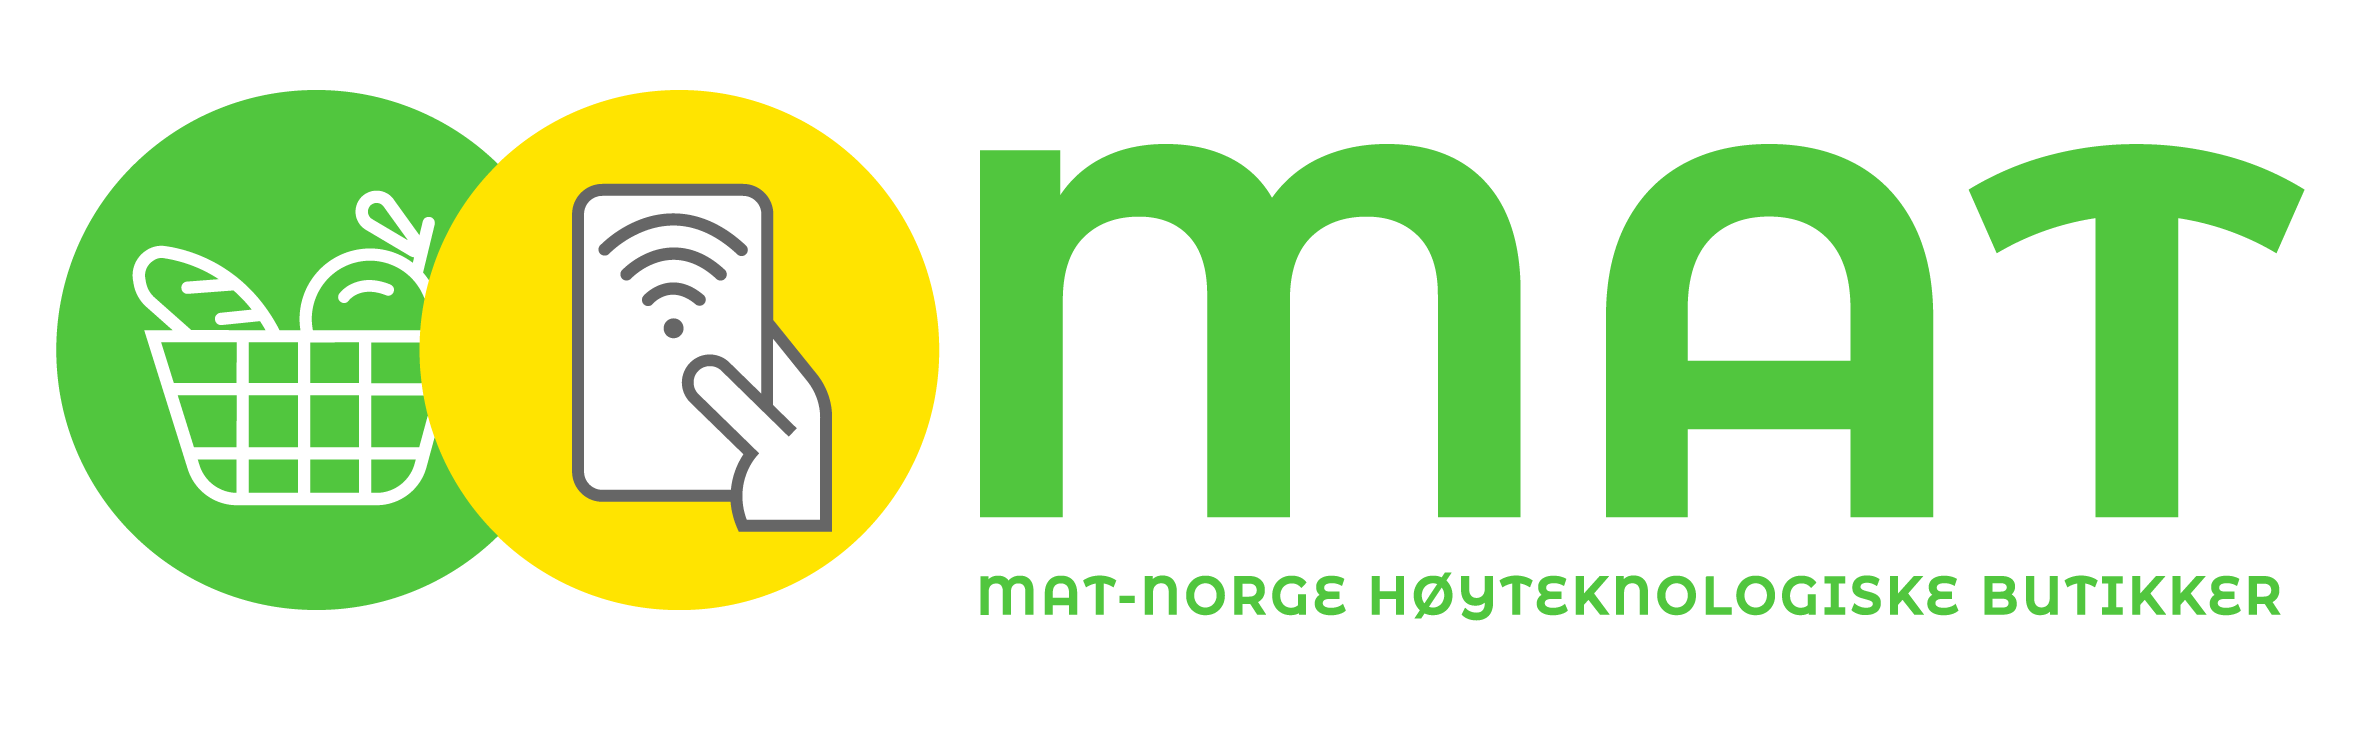 Mat-norge_grnnpng